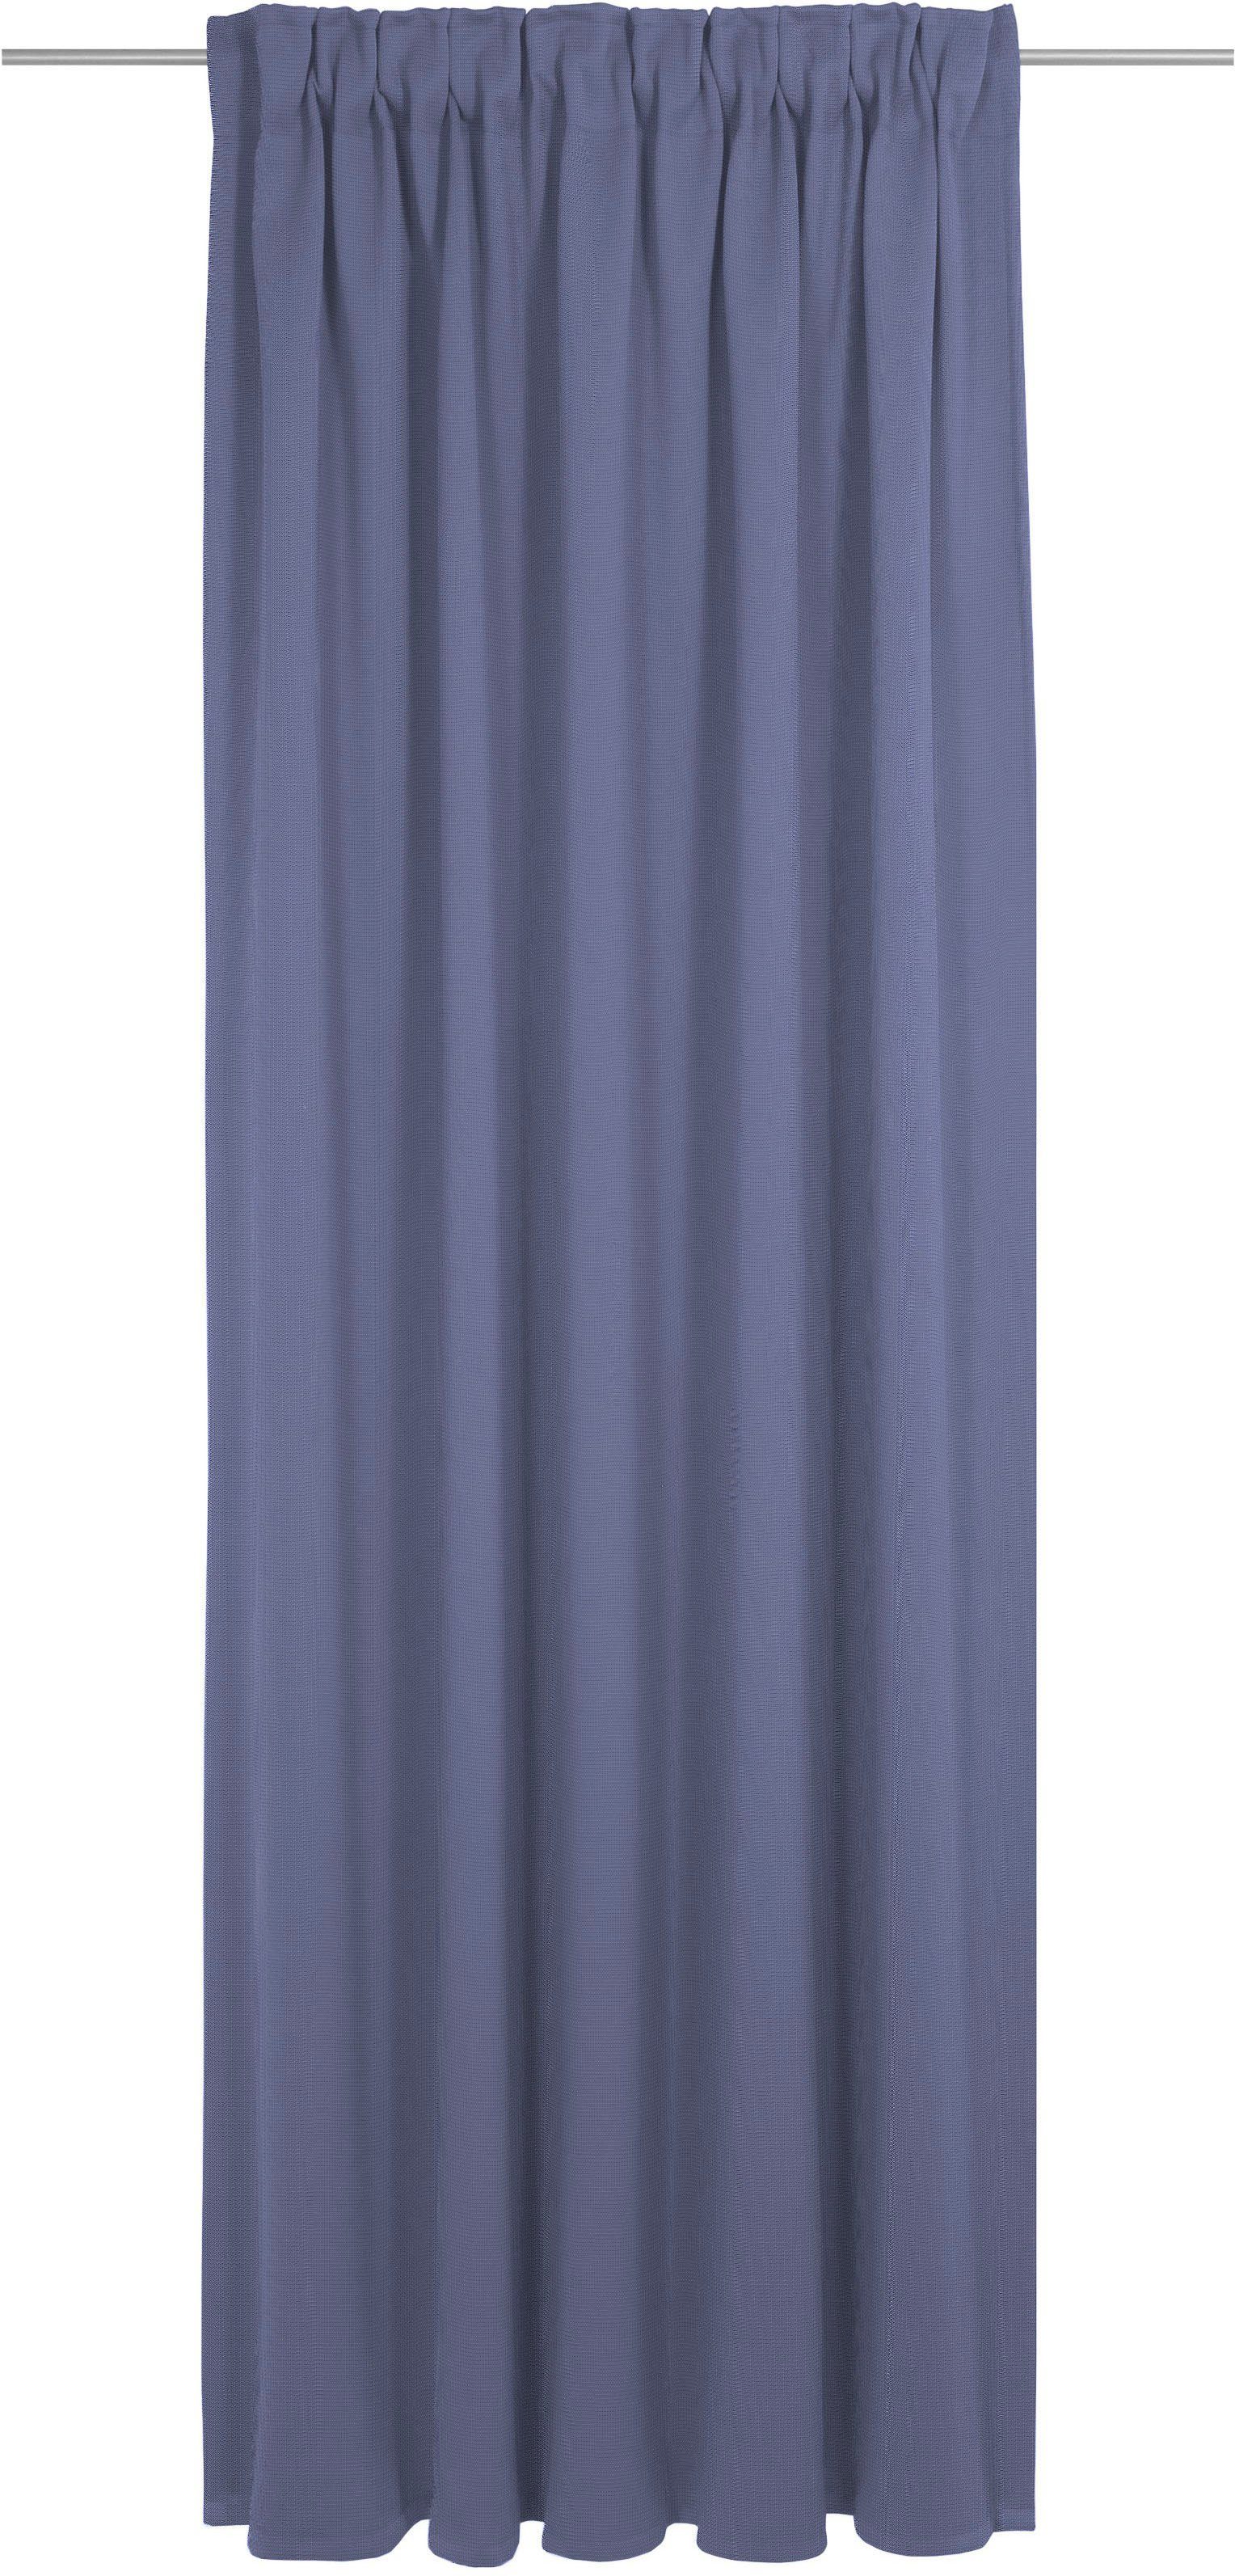 Vorhang Uni Collection, Wirth, Multifunktionsband (1 St), blickdicht, nach Maß royalblau